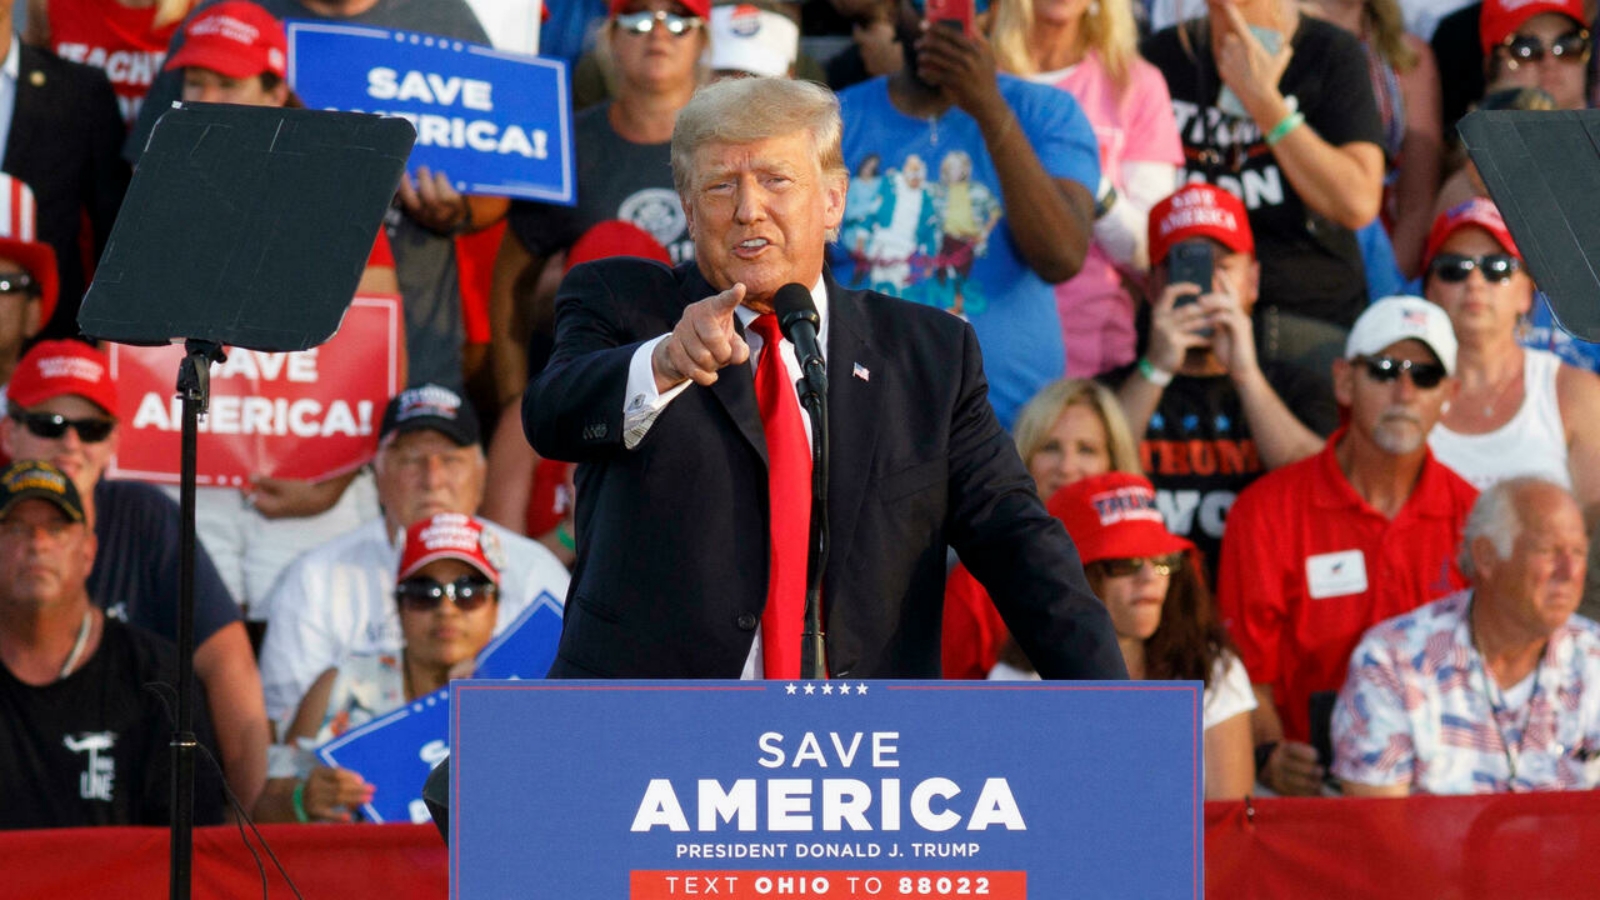 الرئيس الأميركي السابق دونالد ترامب خلال خطاب على غرار حملته الانتخابية في ويلينغتون، أوهايو، الولايات المتحدة الأميركية. بتاريخ 26 حزيران/ يونيو 2021.